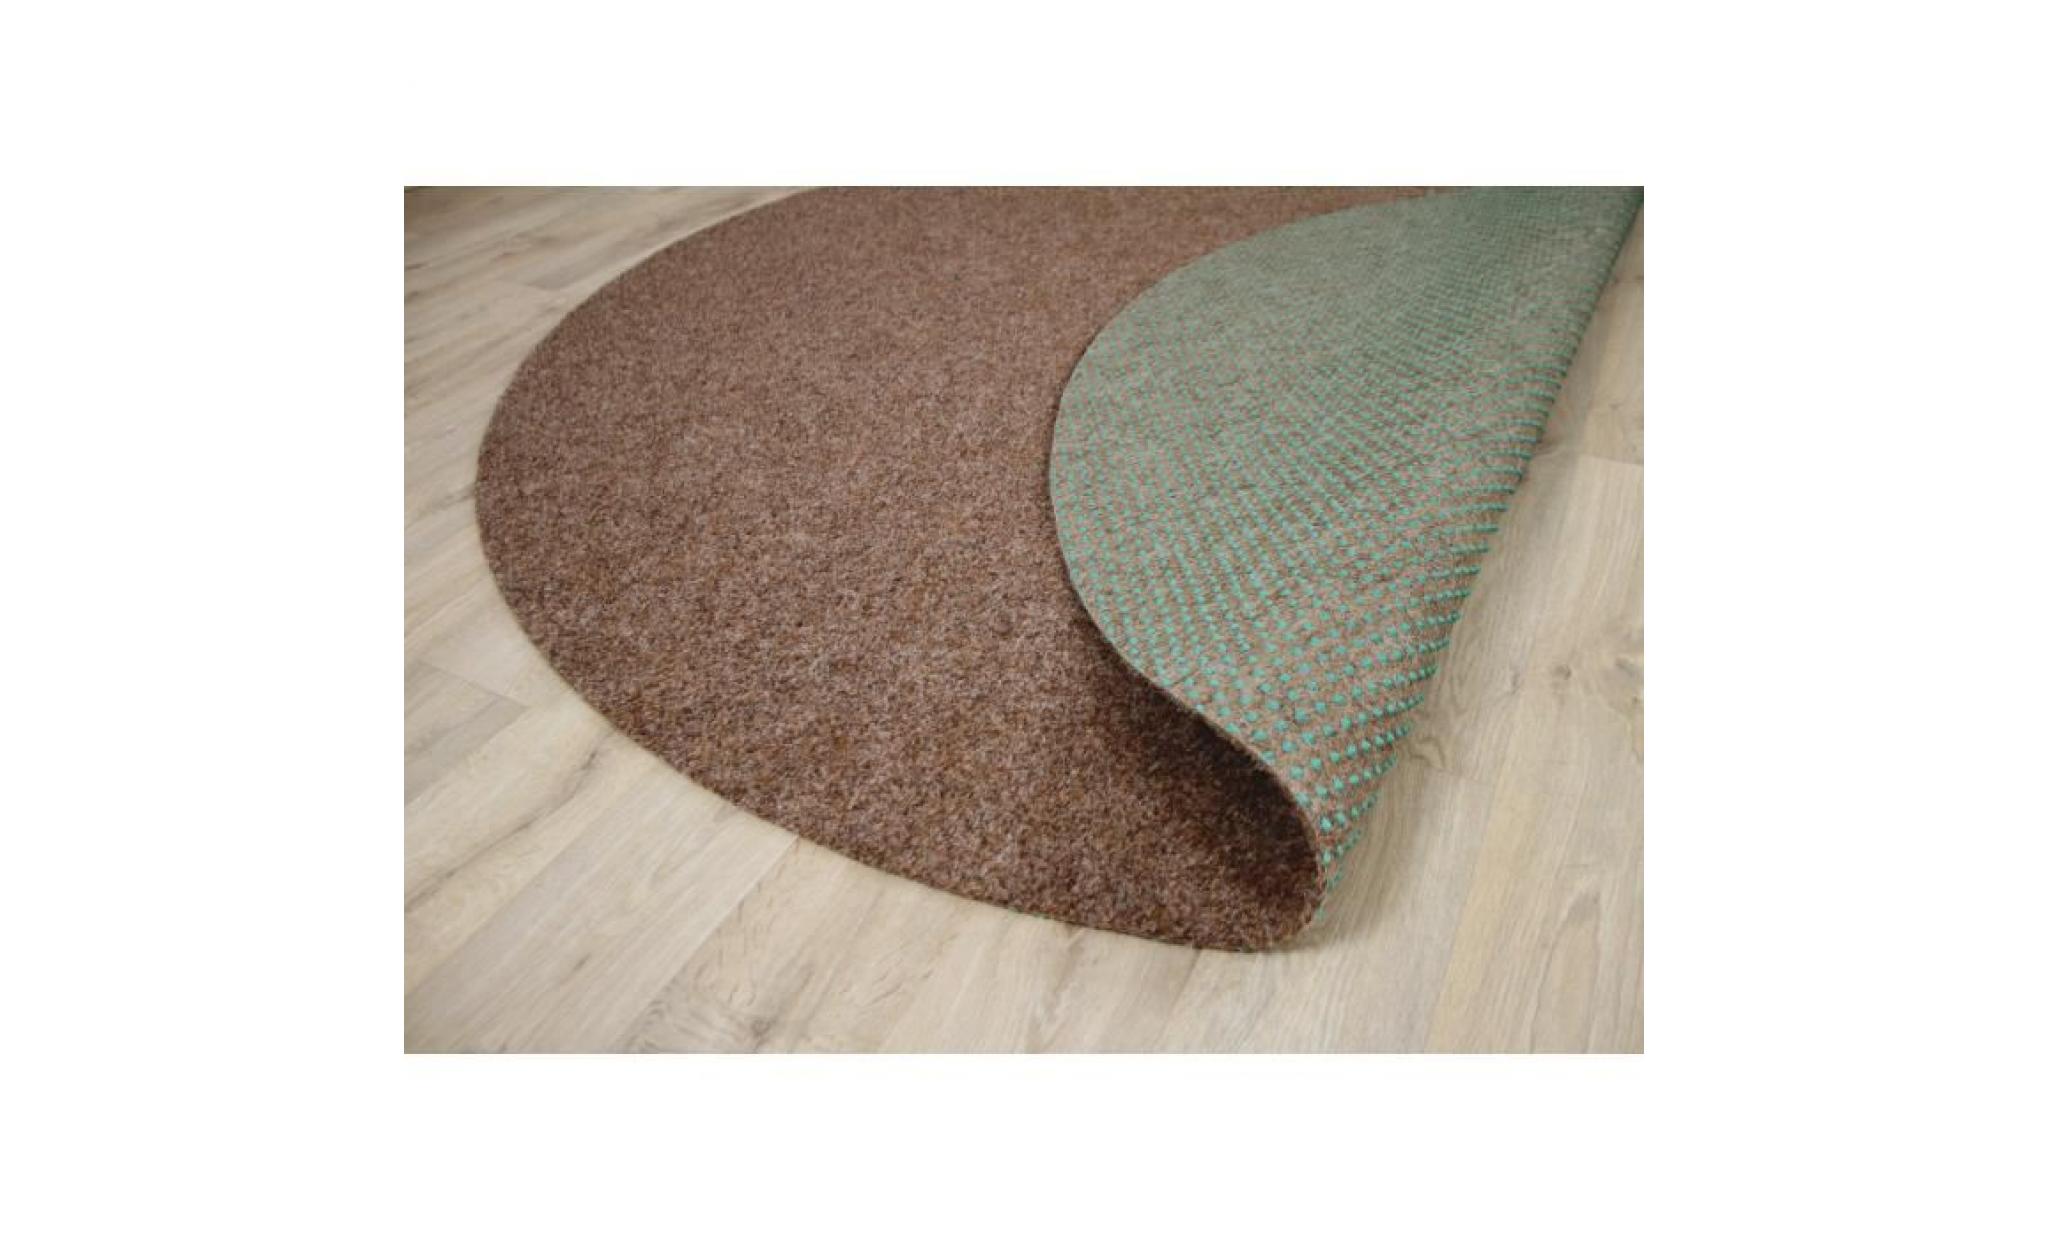 kingston   tapis type gazon artificiel rond – pour jardin, terrasse, balcon   brun   13 tailles disponibles [200 cm rond] pas cher